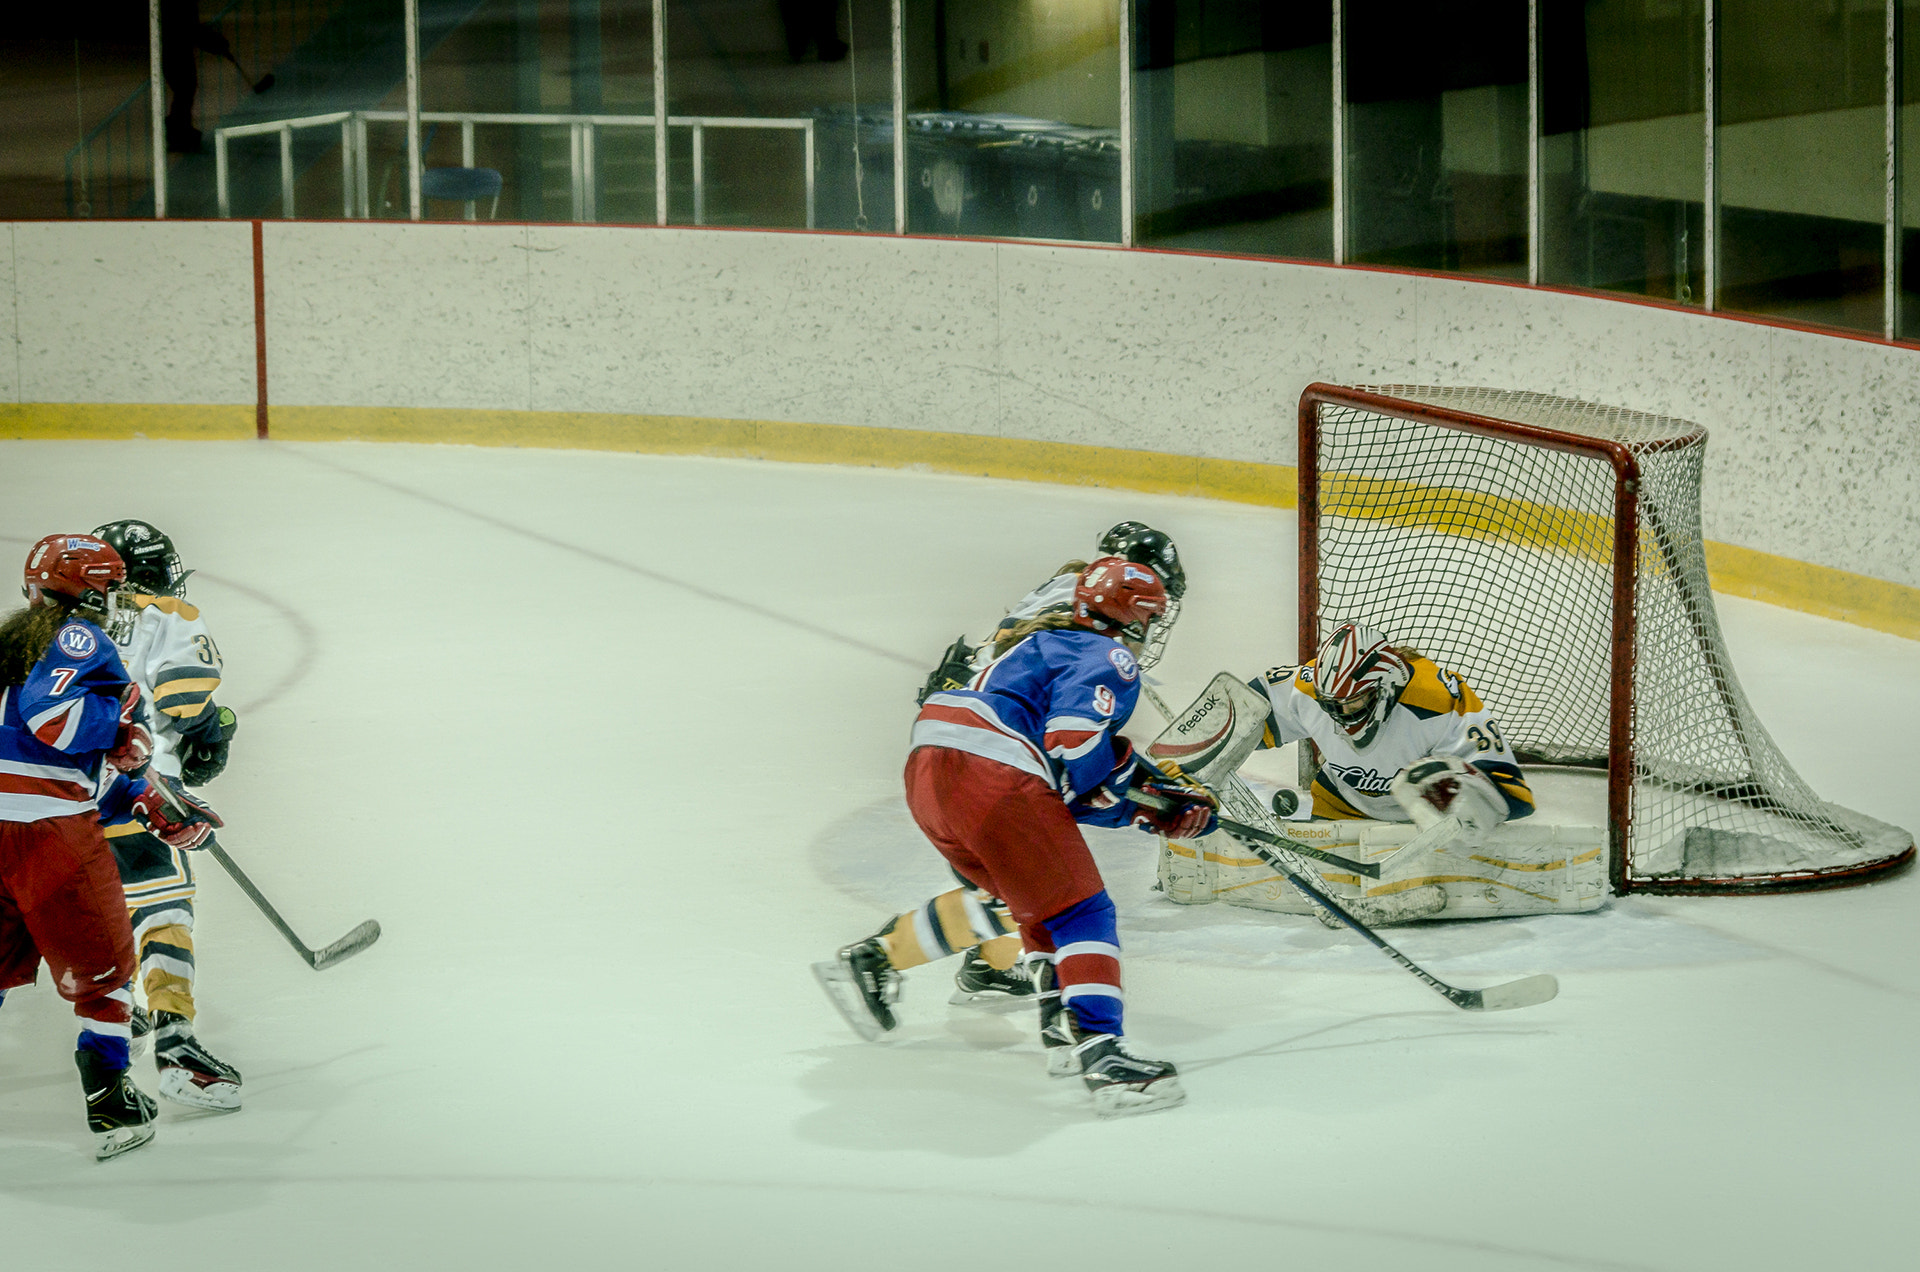 Nikon D7000 sample photo. Hockey au féminin photography